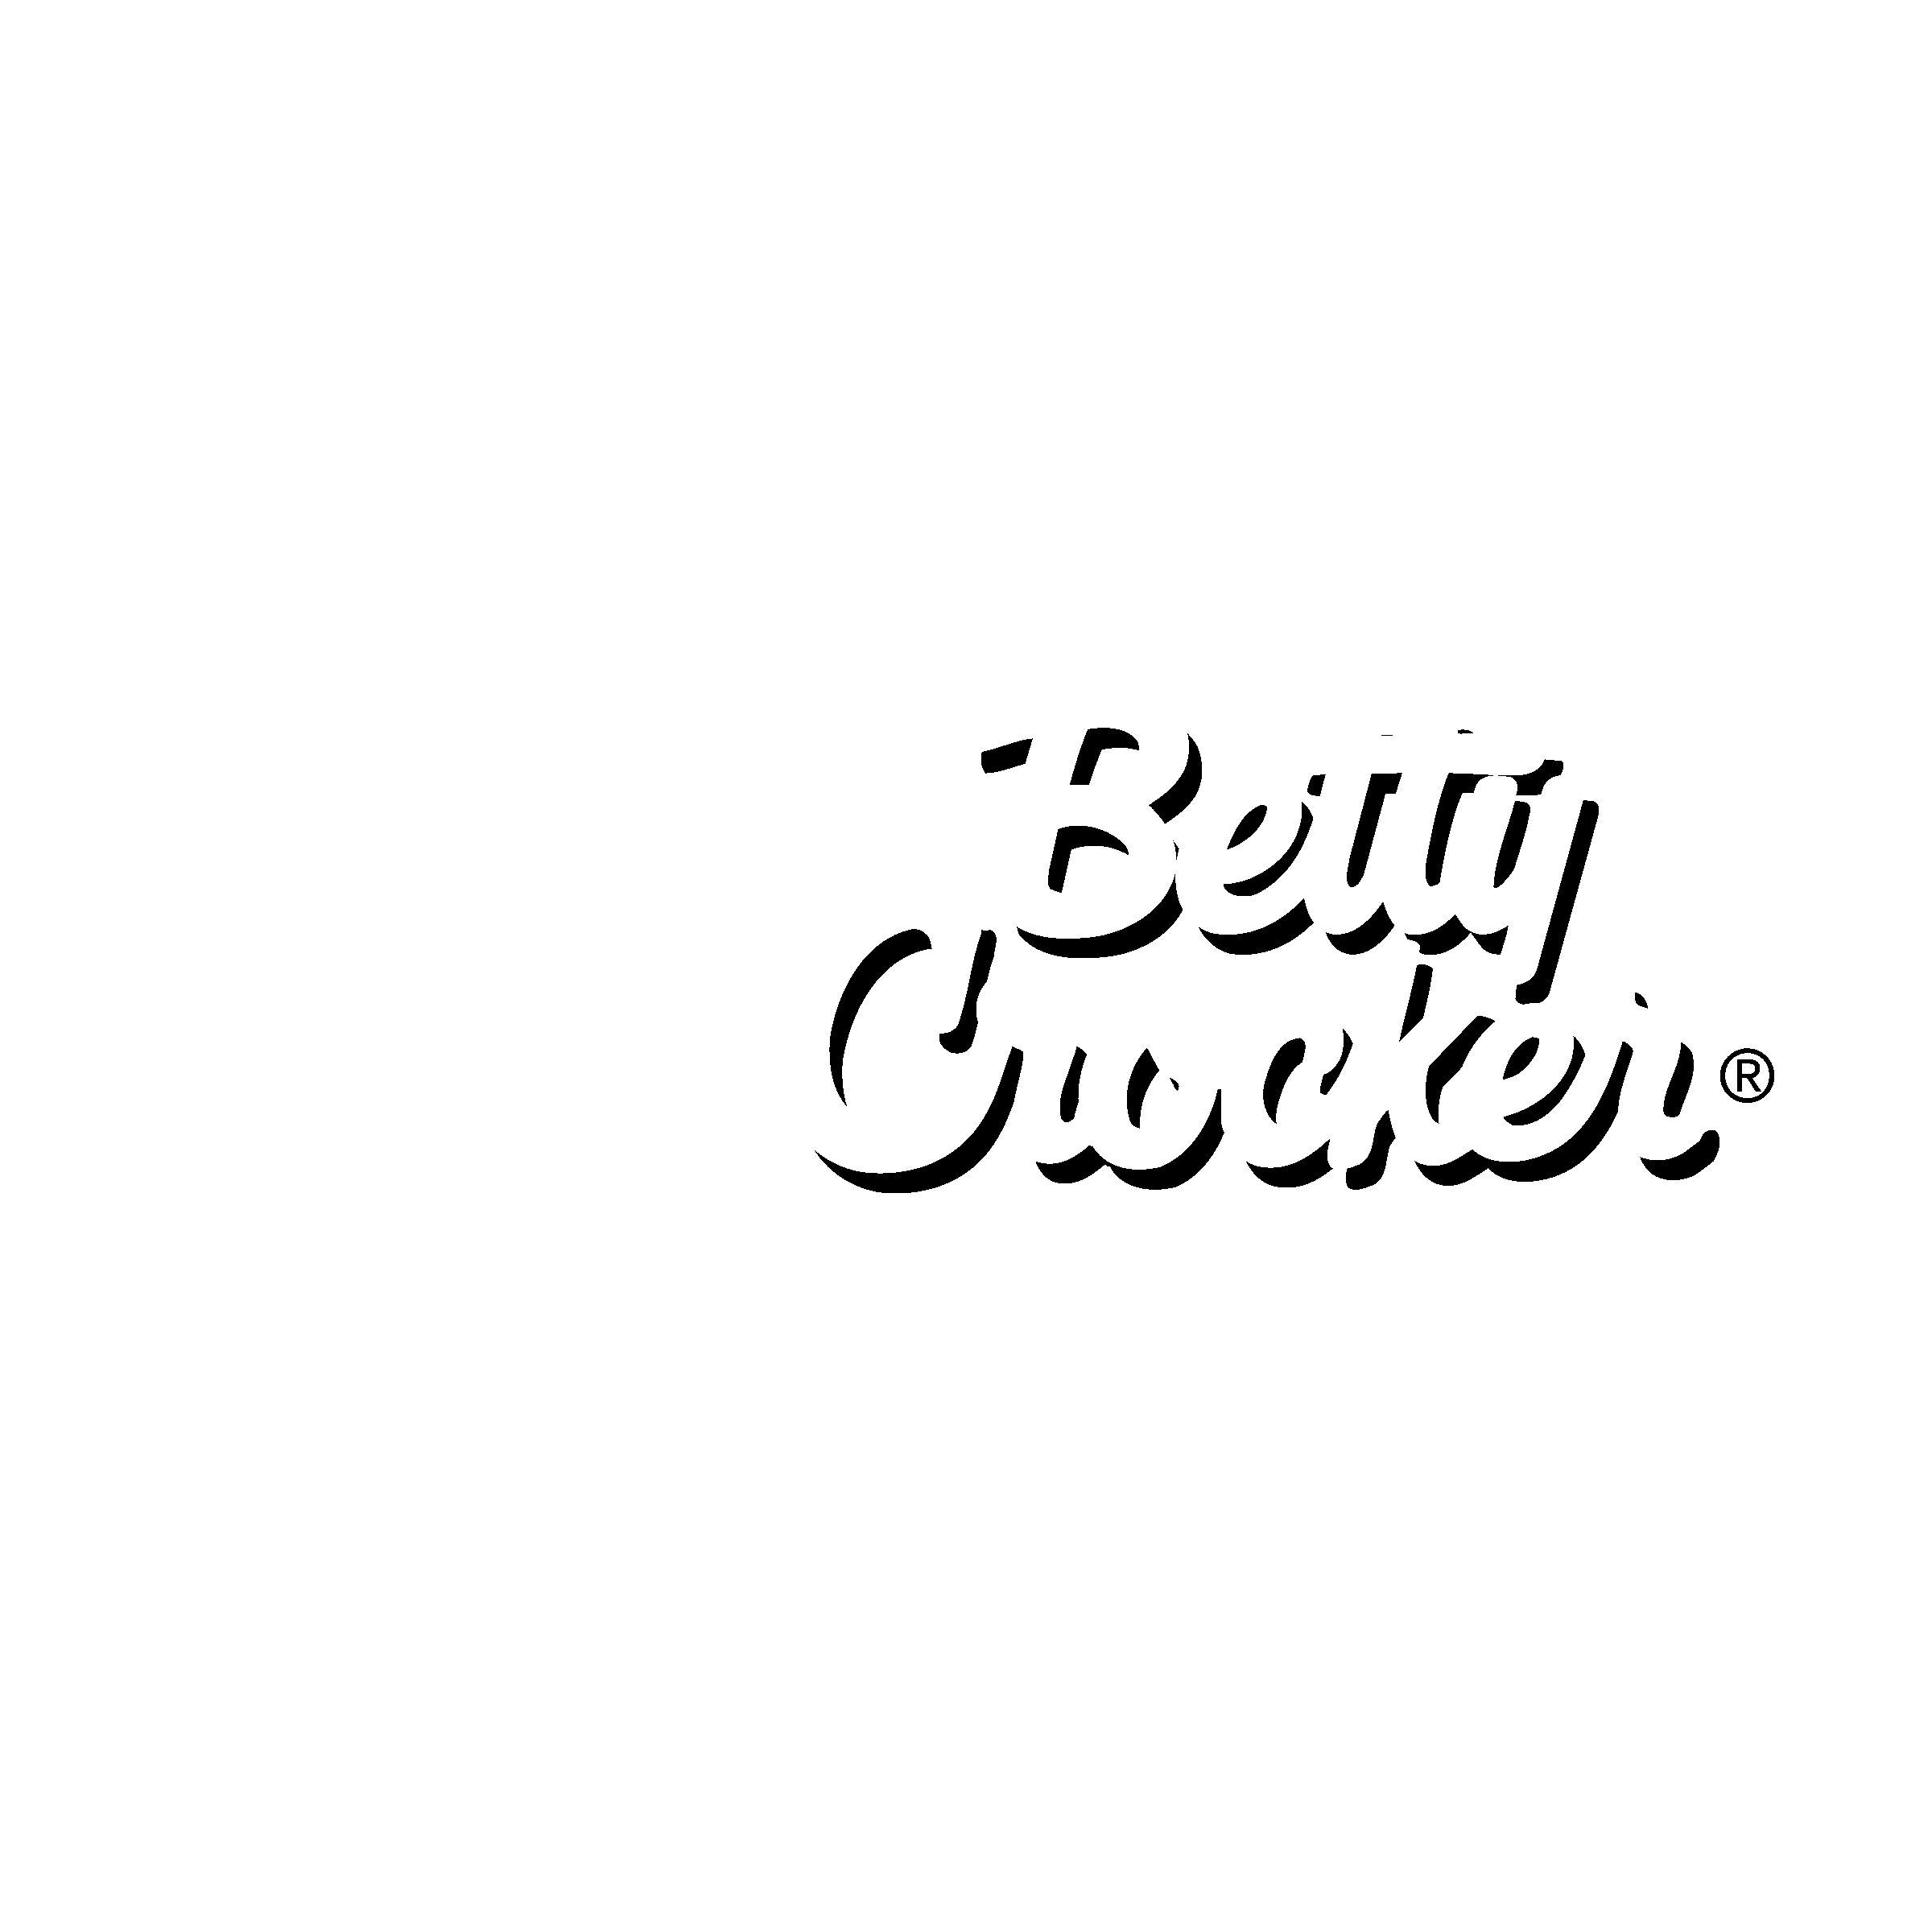 Betty Crocker Logo - Betty Crocker Logo PNG Transparent & SVG Vector